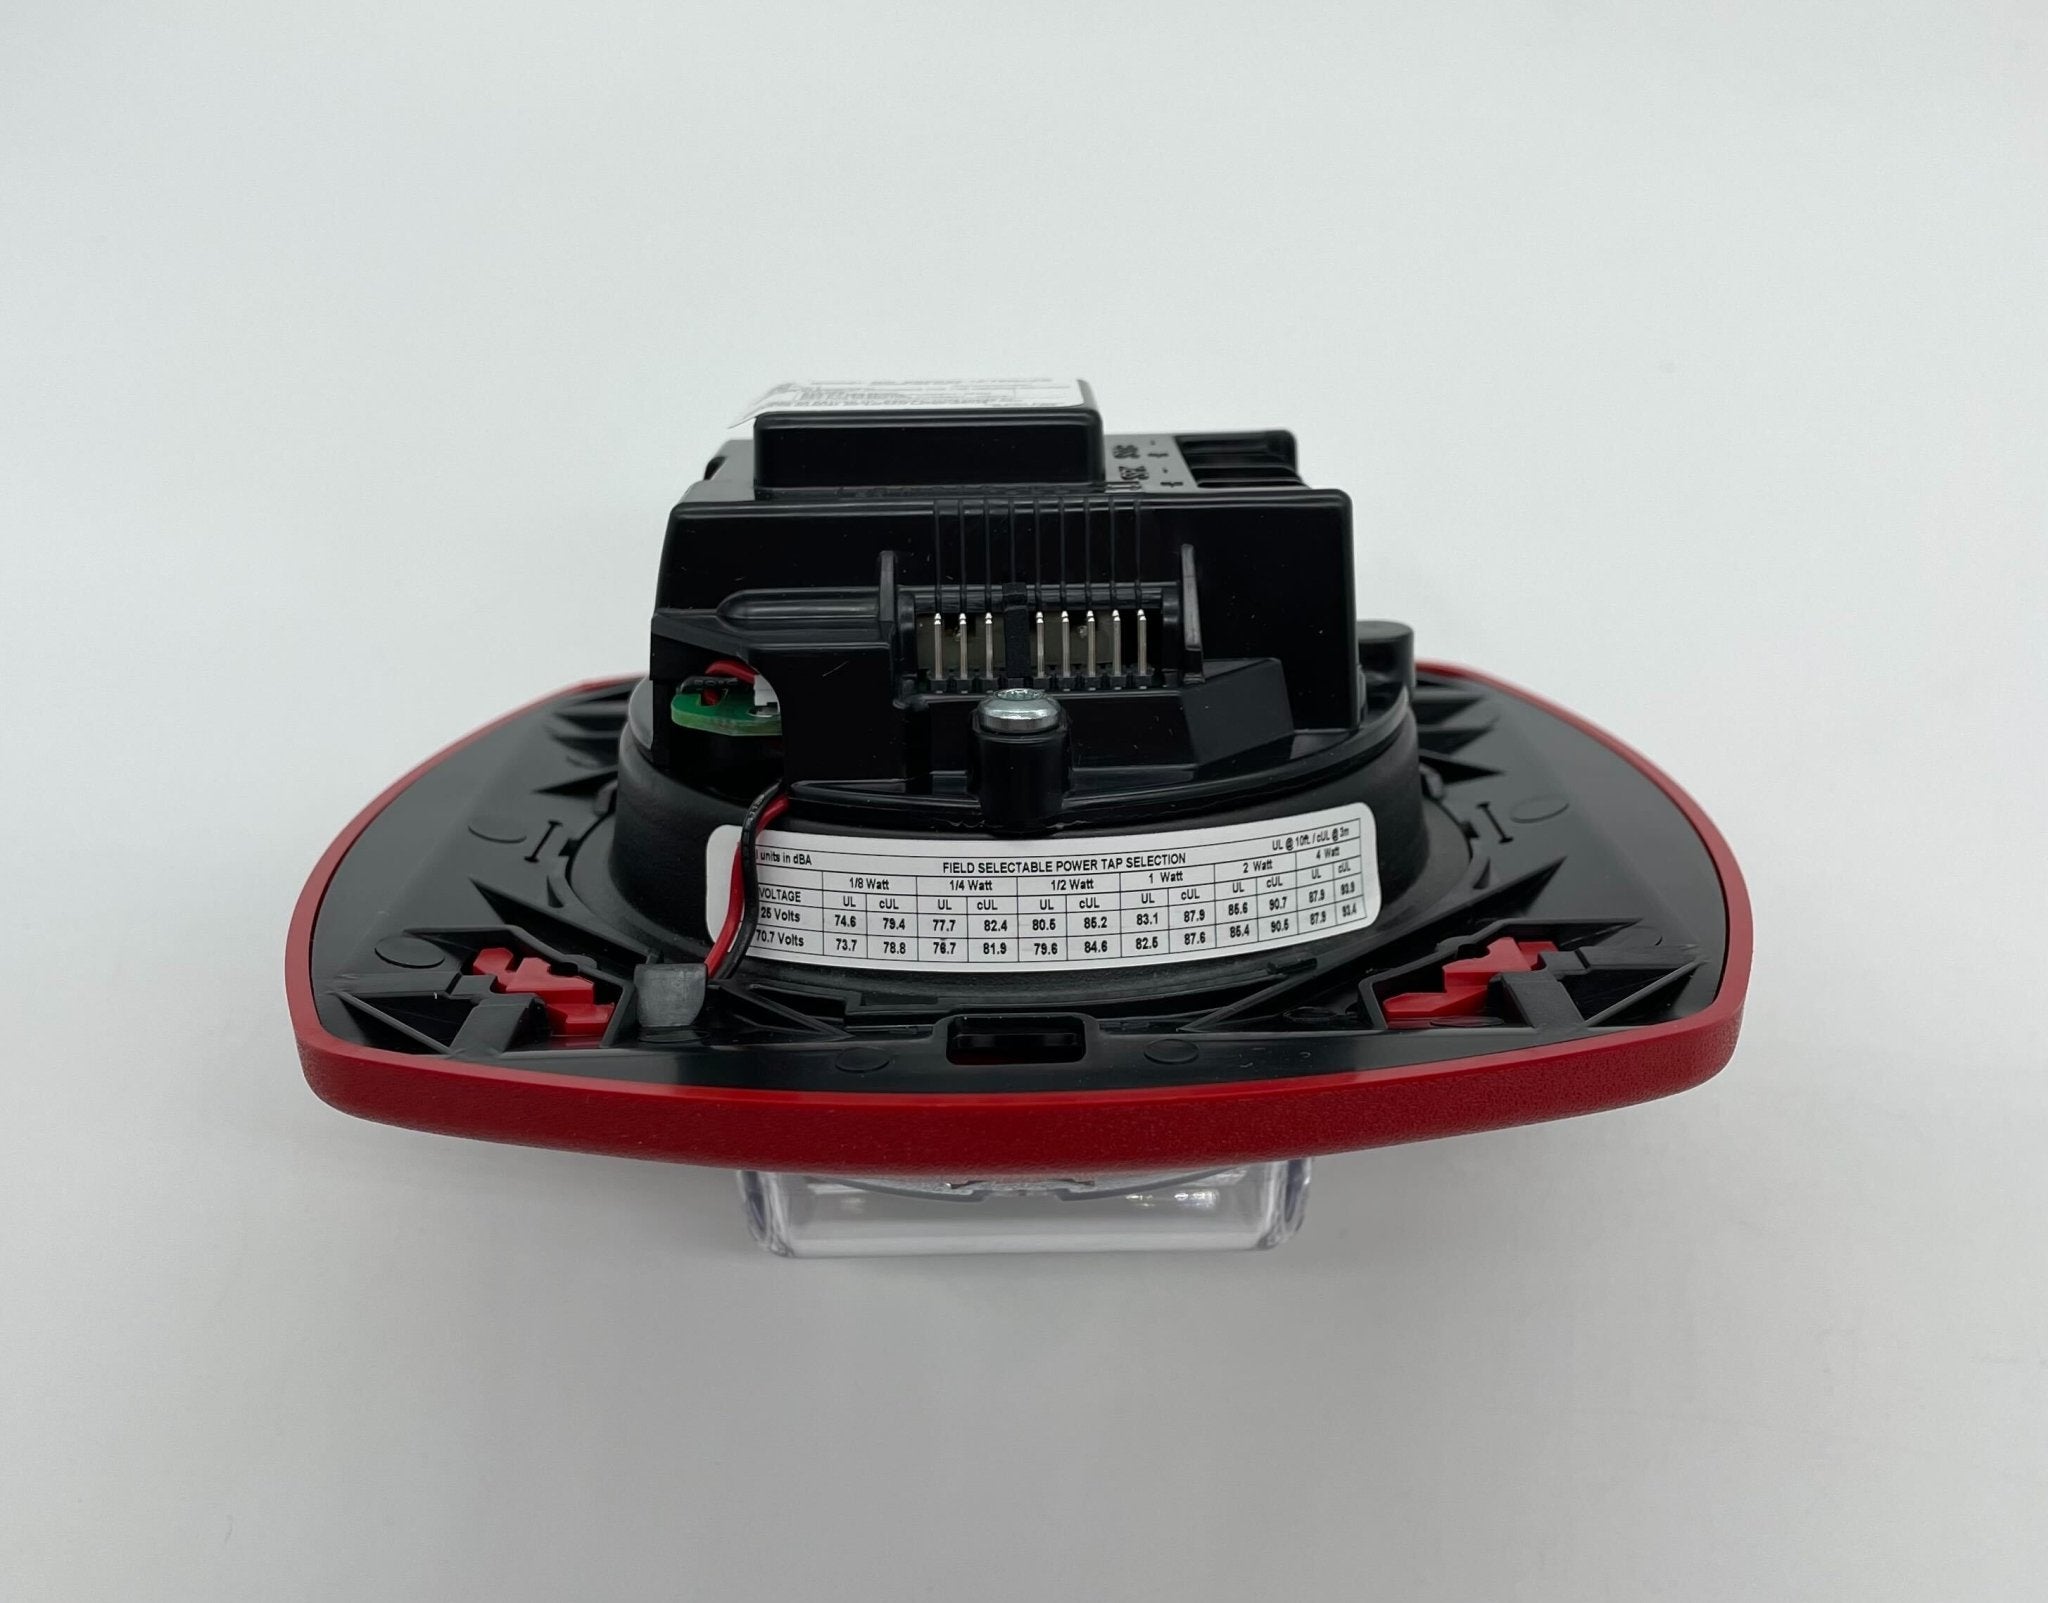 Gentex SSPK24-15/75WLPR - The Fire Alarm Supplier